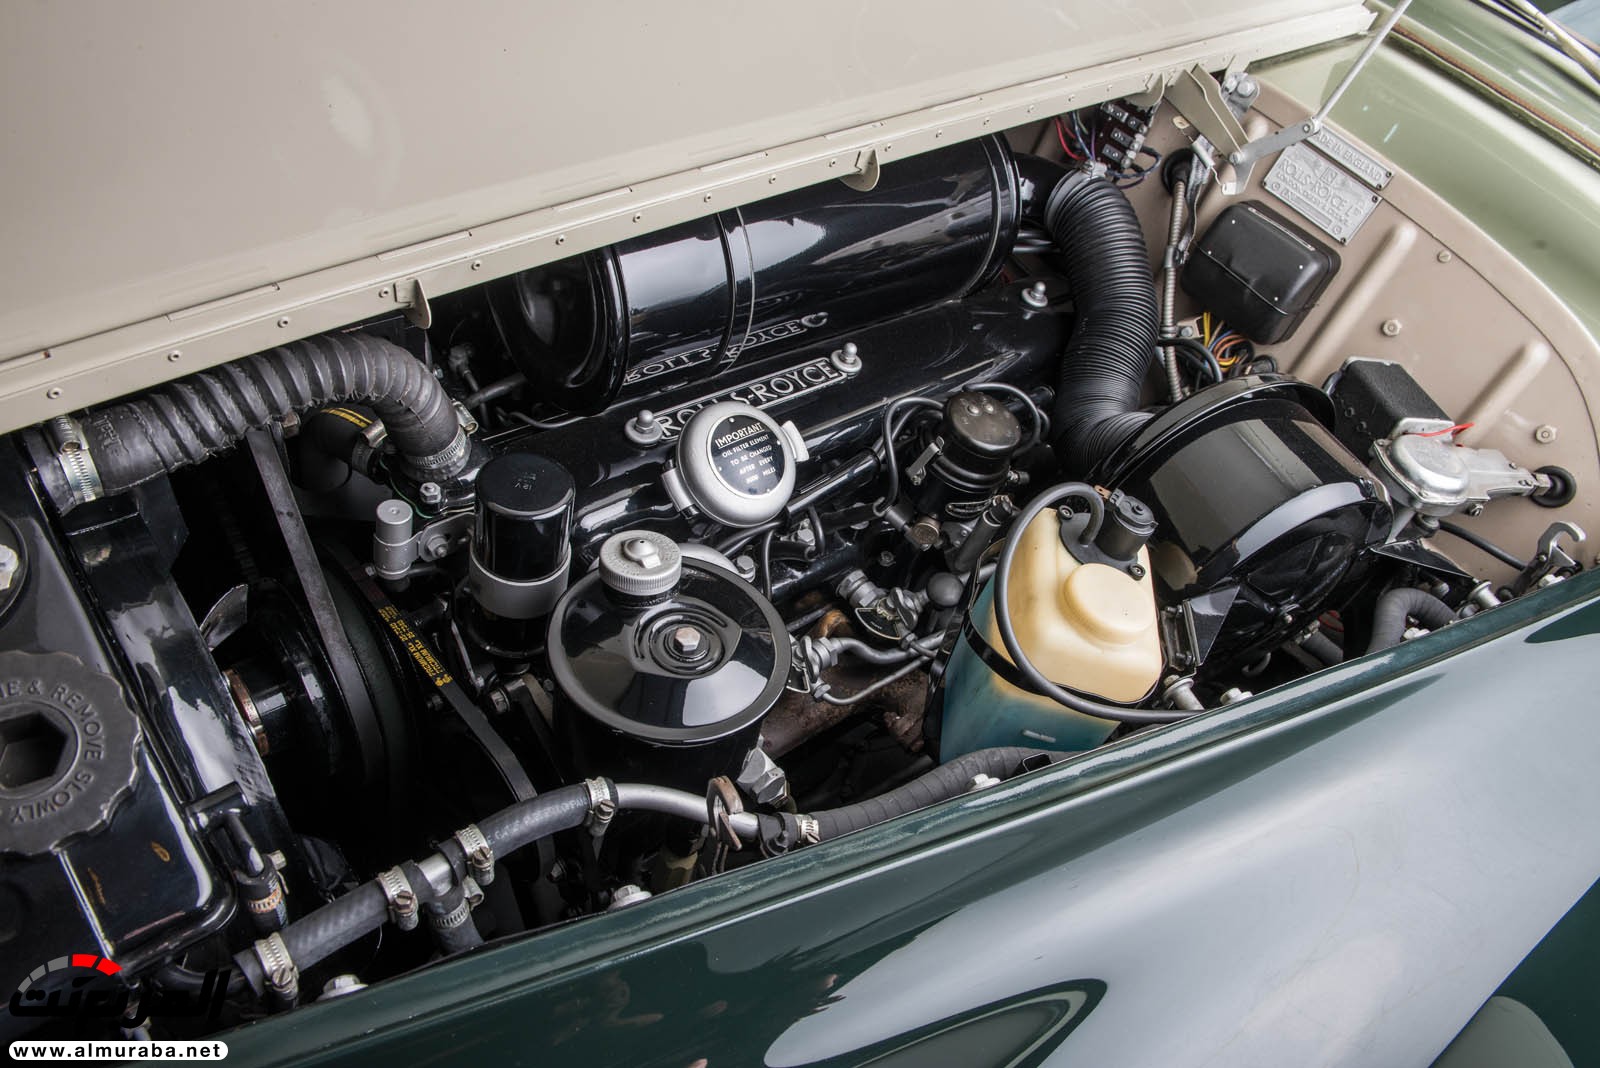 "رولز رويس" سيلفر كلاود 1959 ذات هيكلة الواجن تتوجه لتباع في مزاد عالمي Rolls-Royce Silver Cloud 85